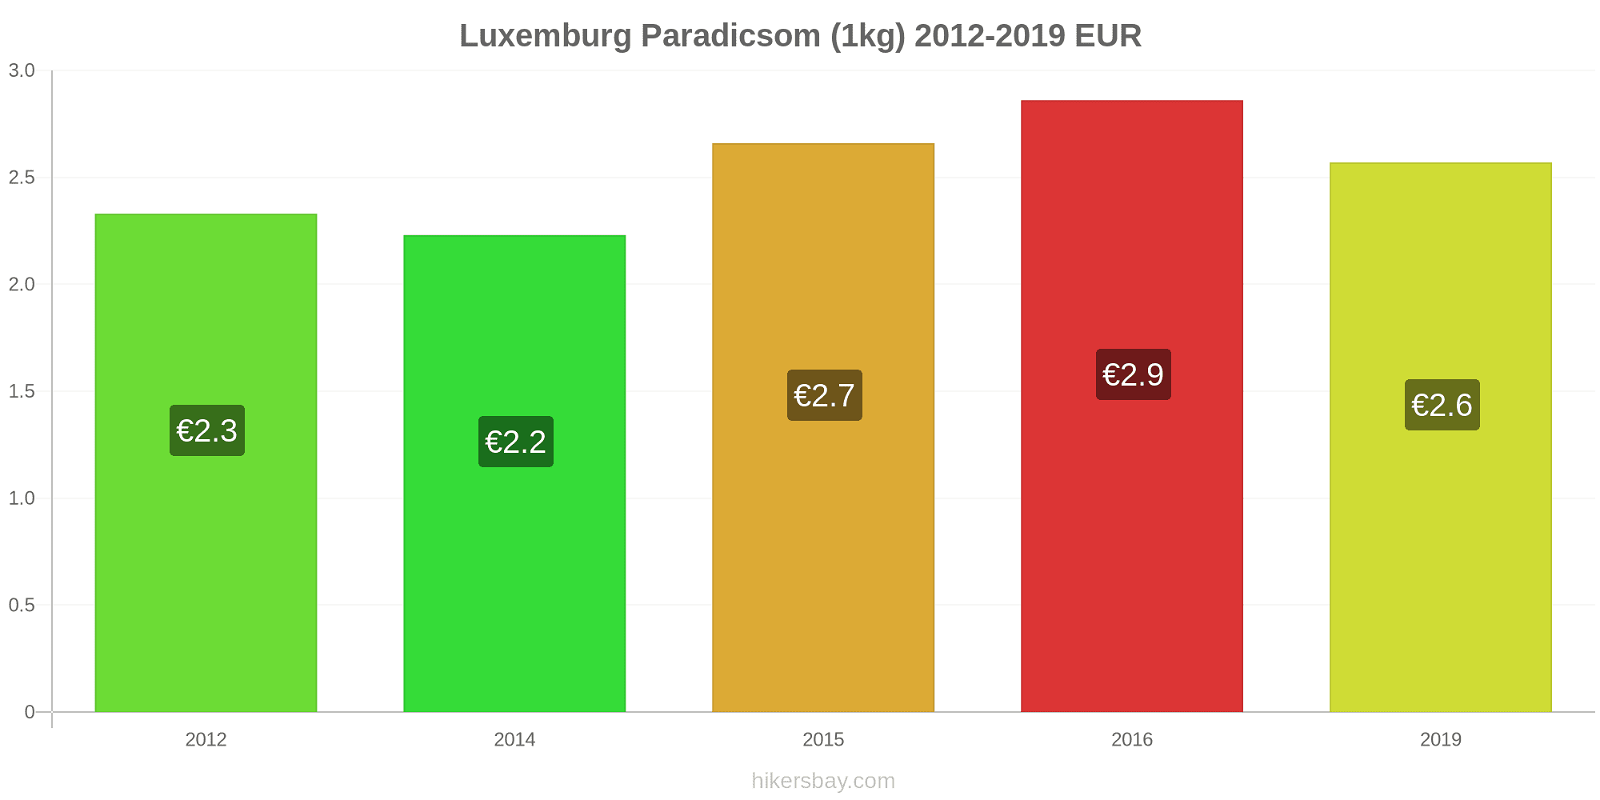 Luxemburg árváltozások Paradicsom (1kg) hikersbay.com